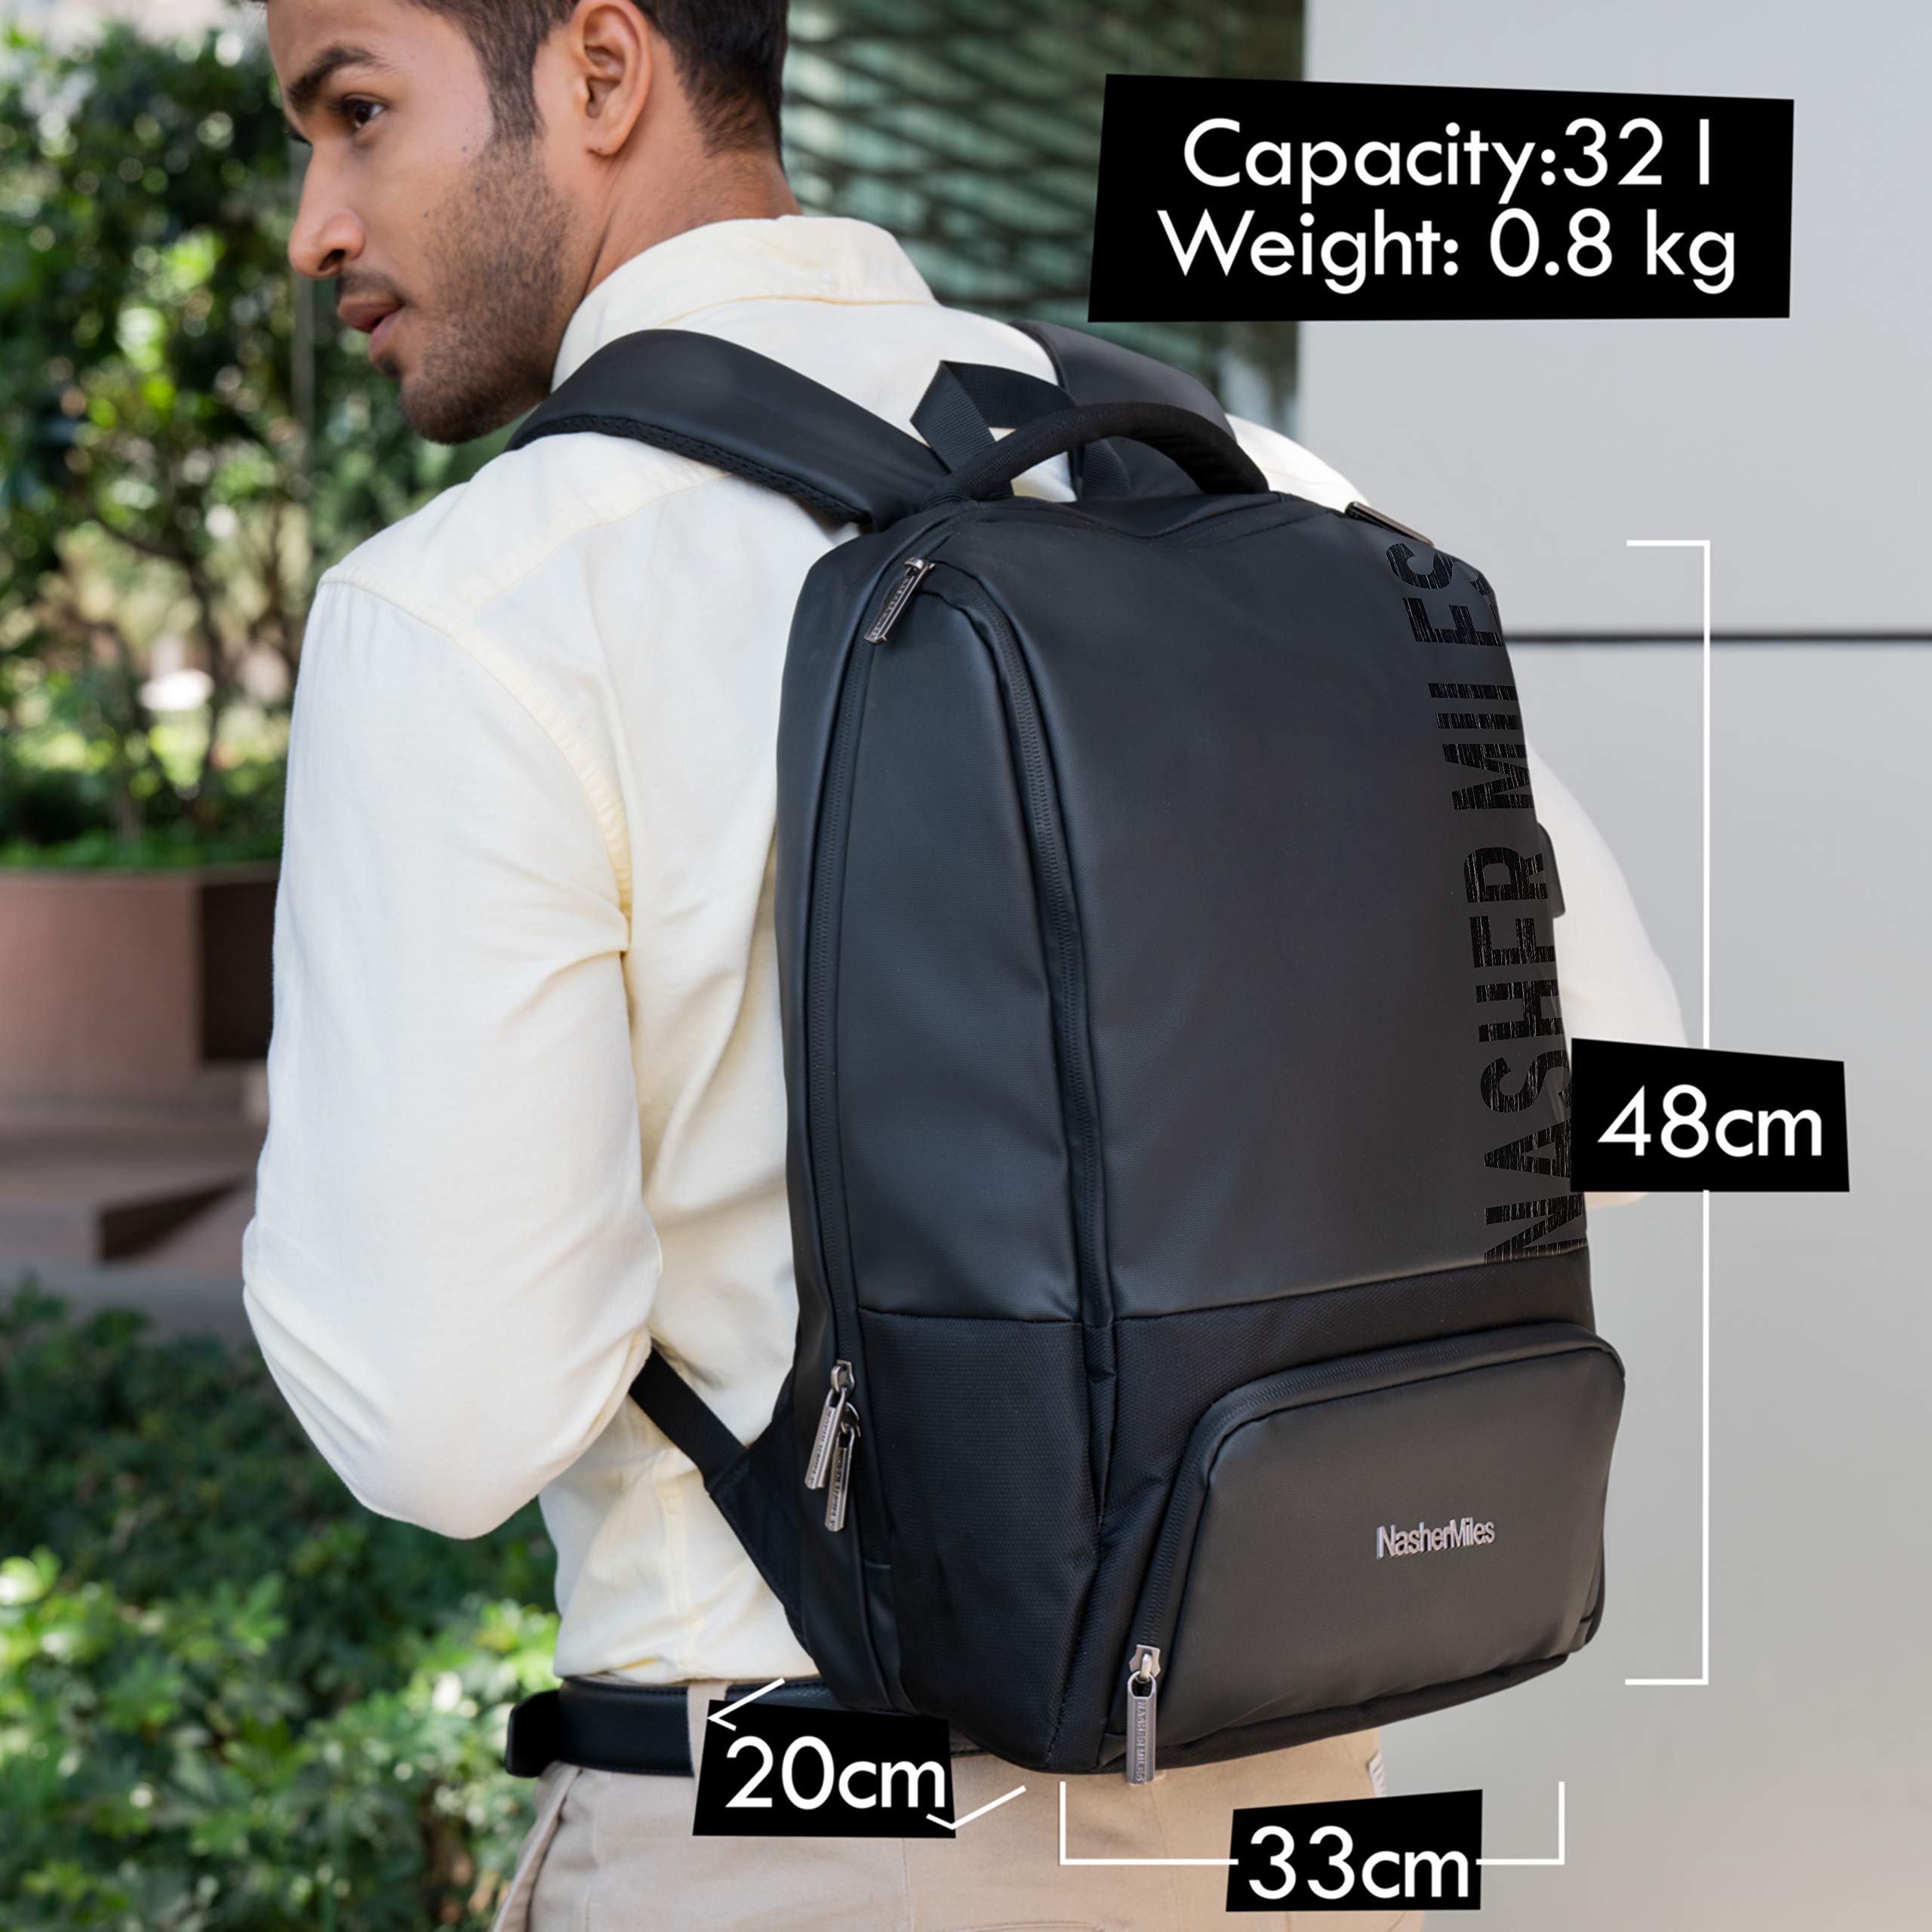 Mardol Corporate Backpack